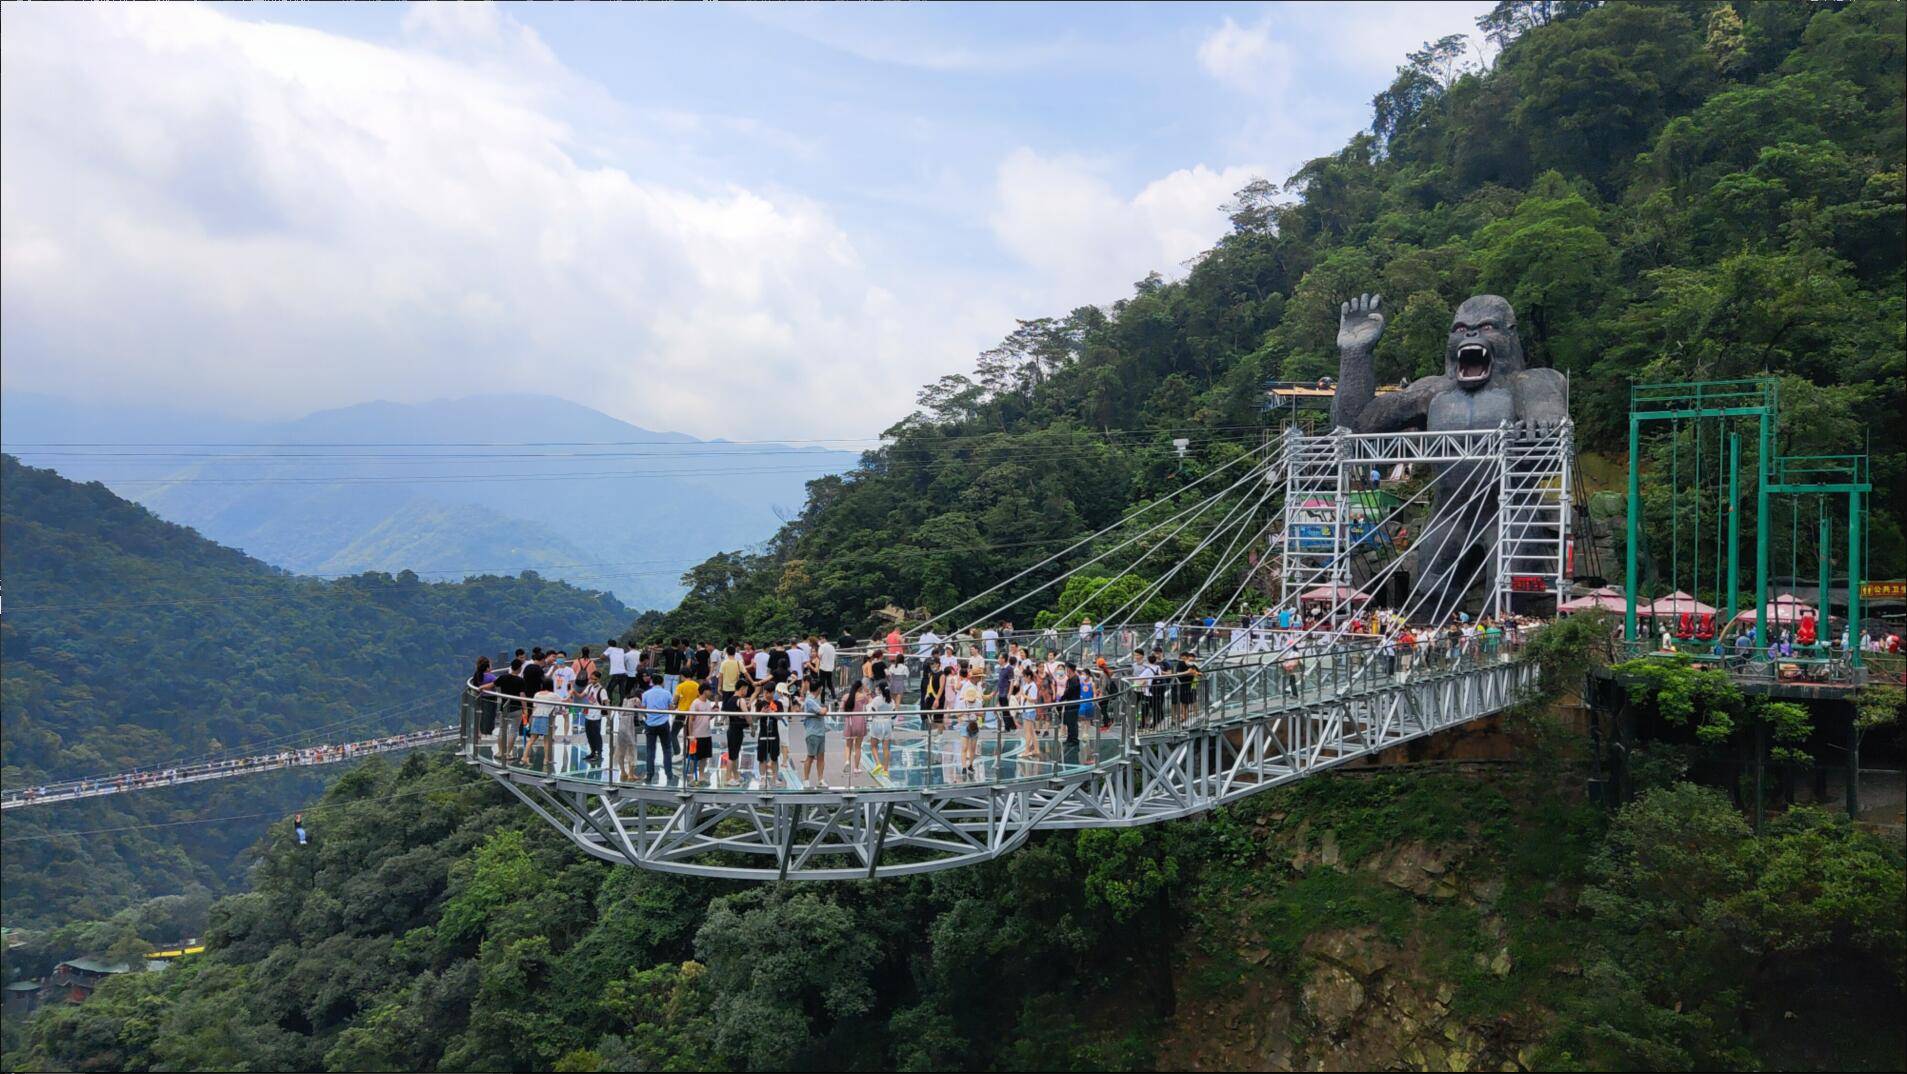 广东省清远市有两个特别出名的网红玻璃桥,分别为黄腾峡风景区的"